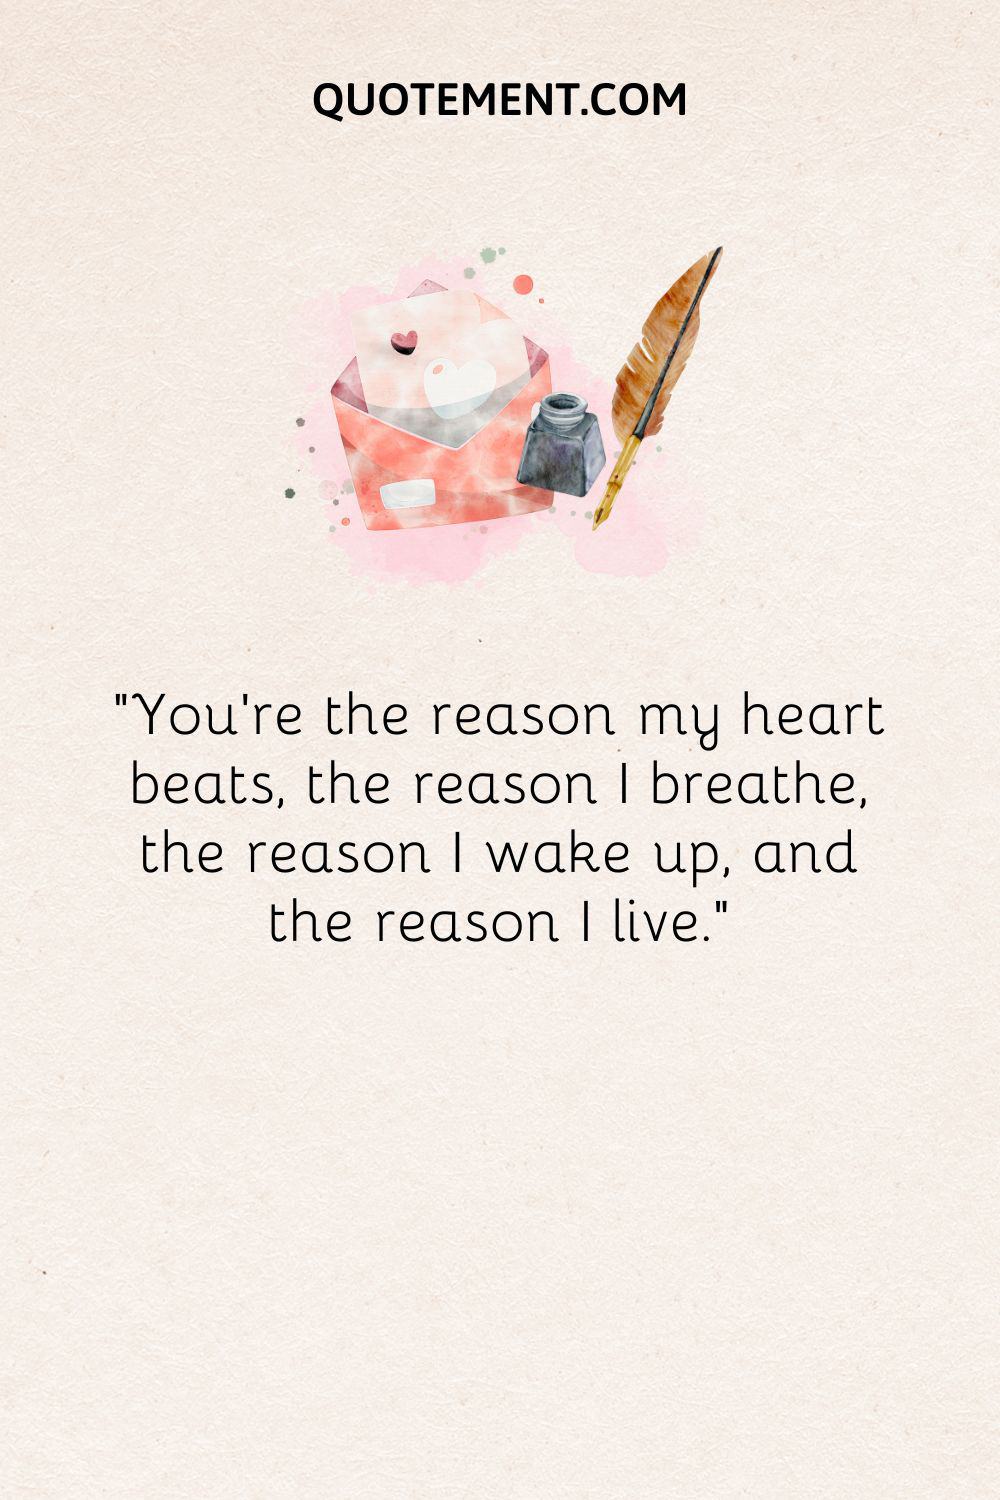 “You're the reason my heart beats, the reason I breathe, the reason I wake up, and the reason I live.”